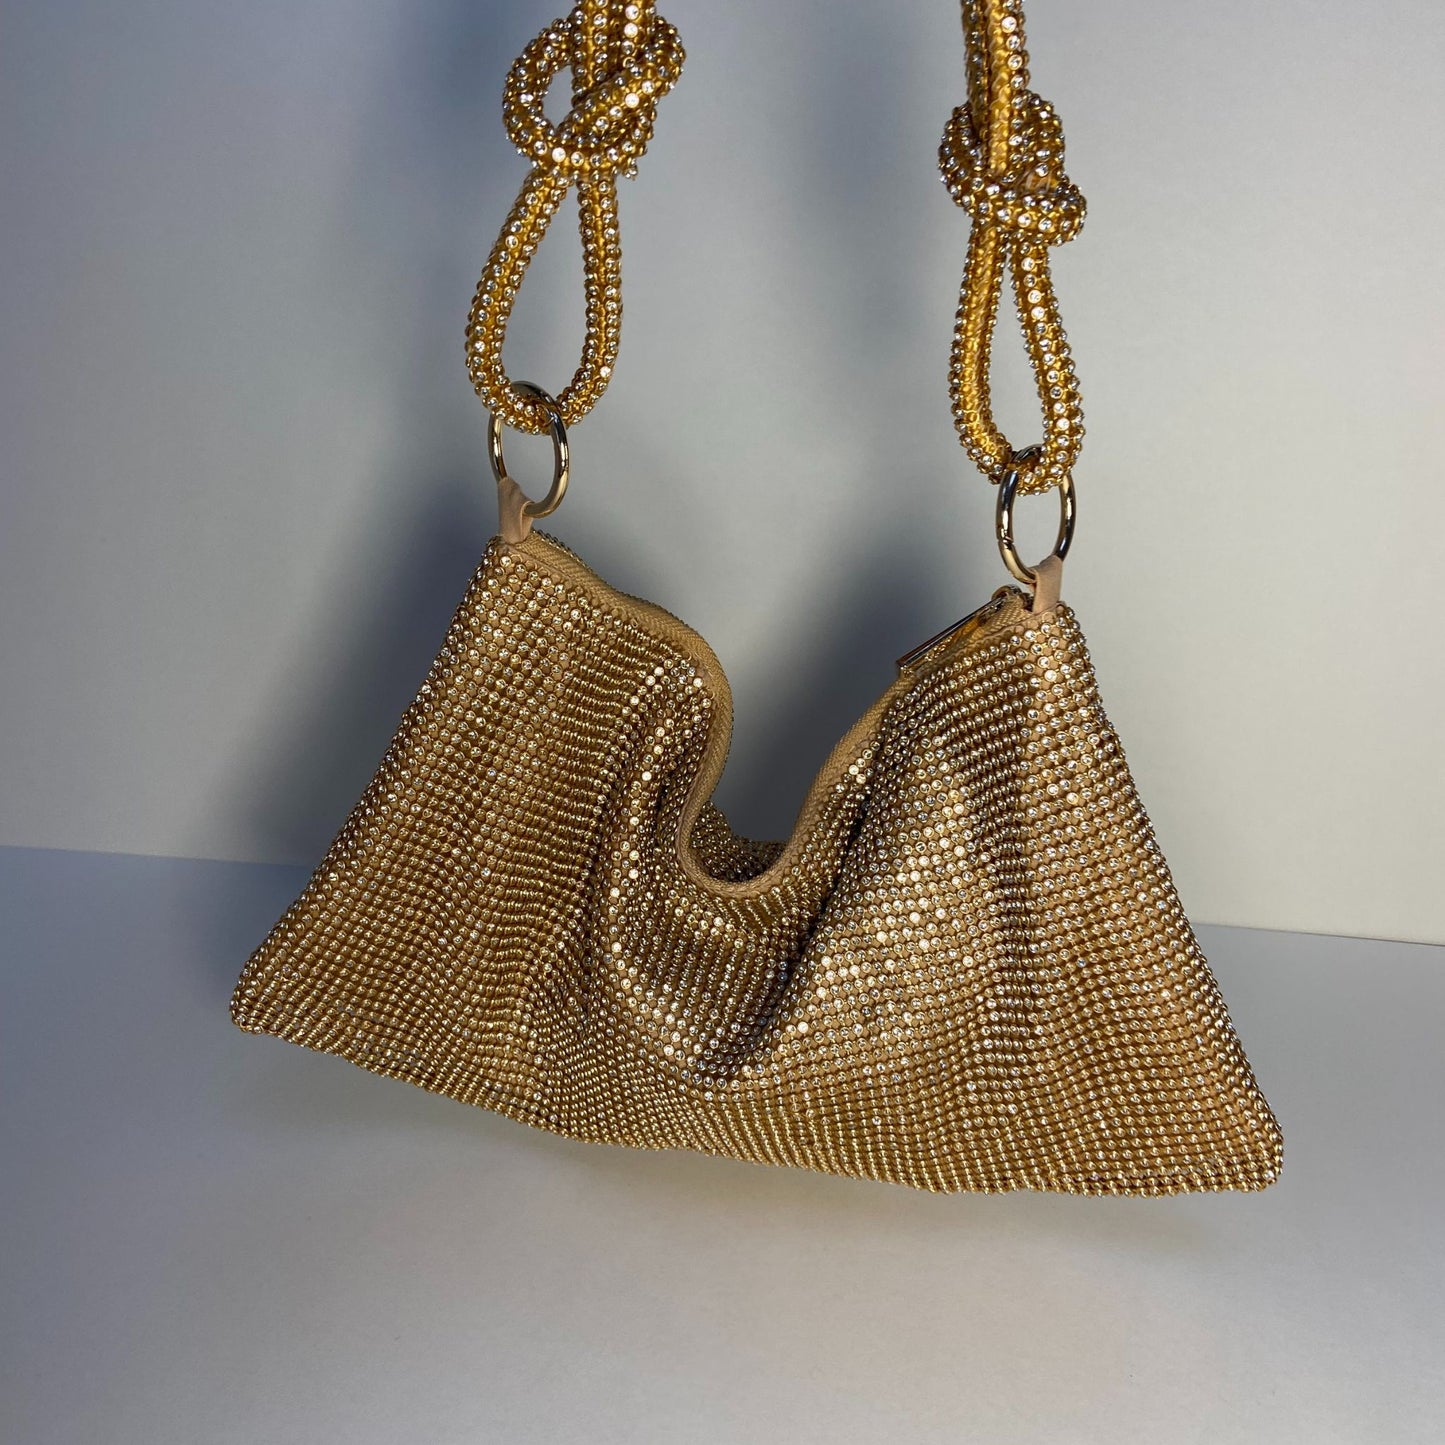 Crystal Metallic Handbags